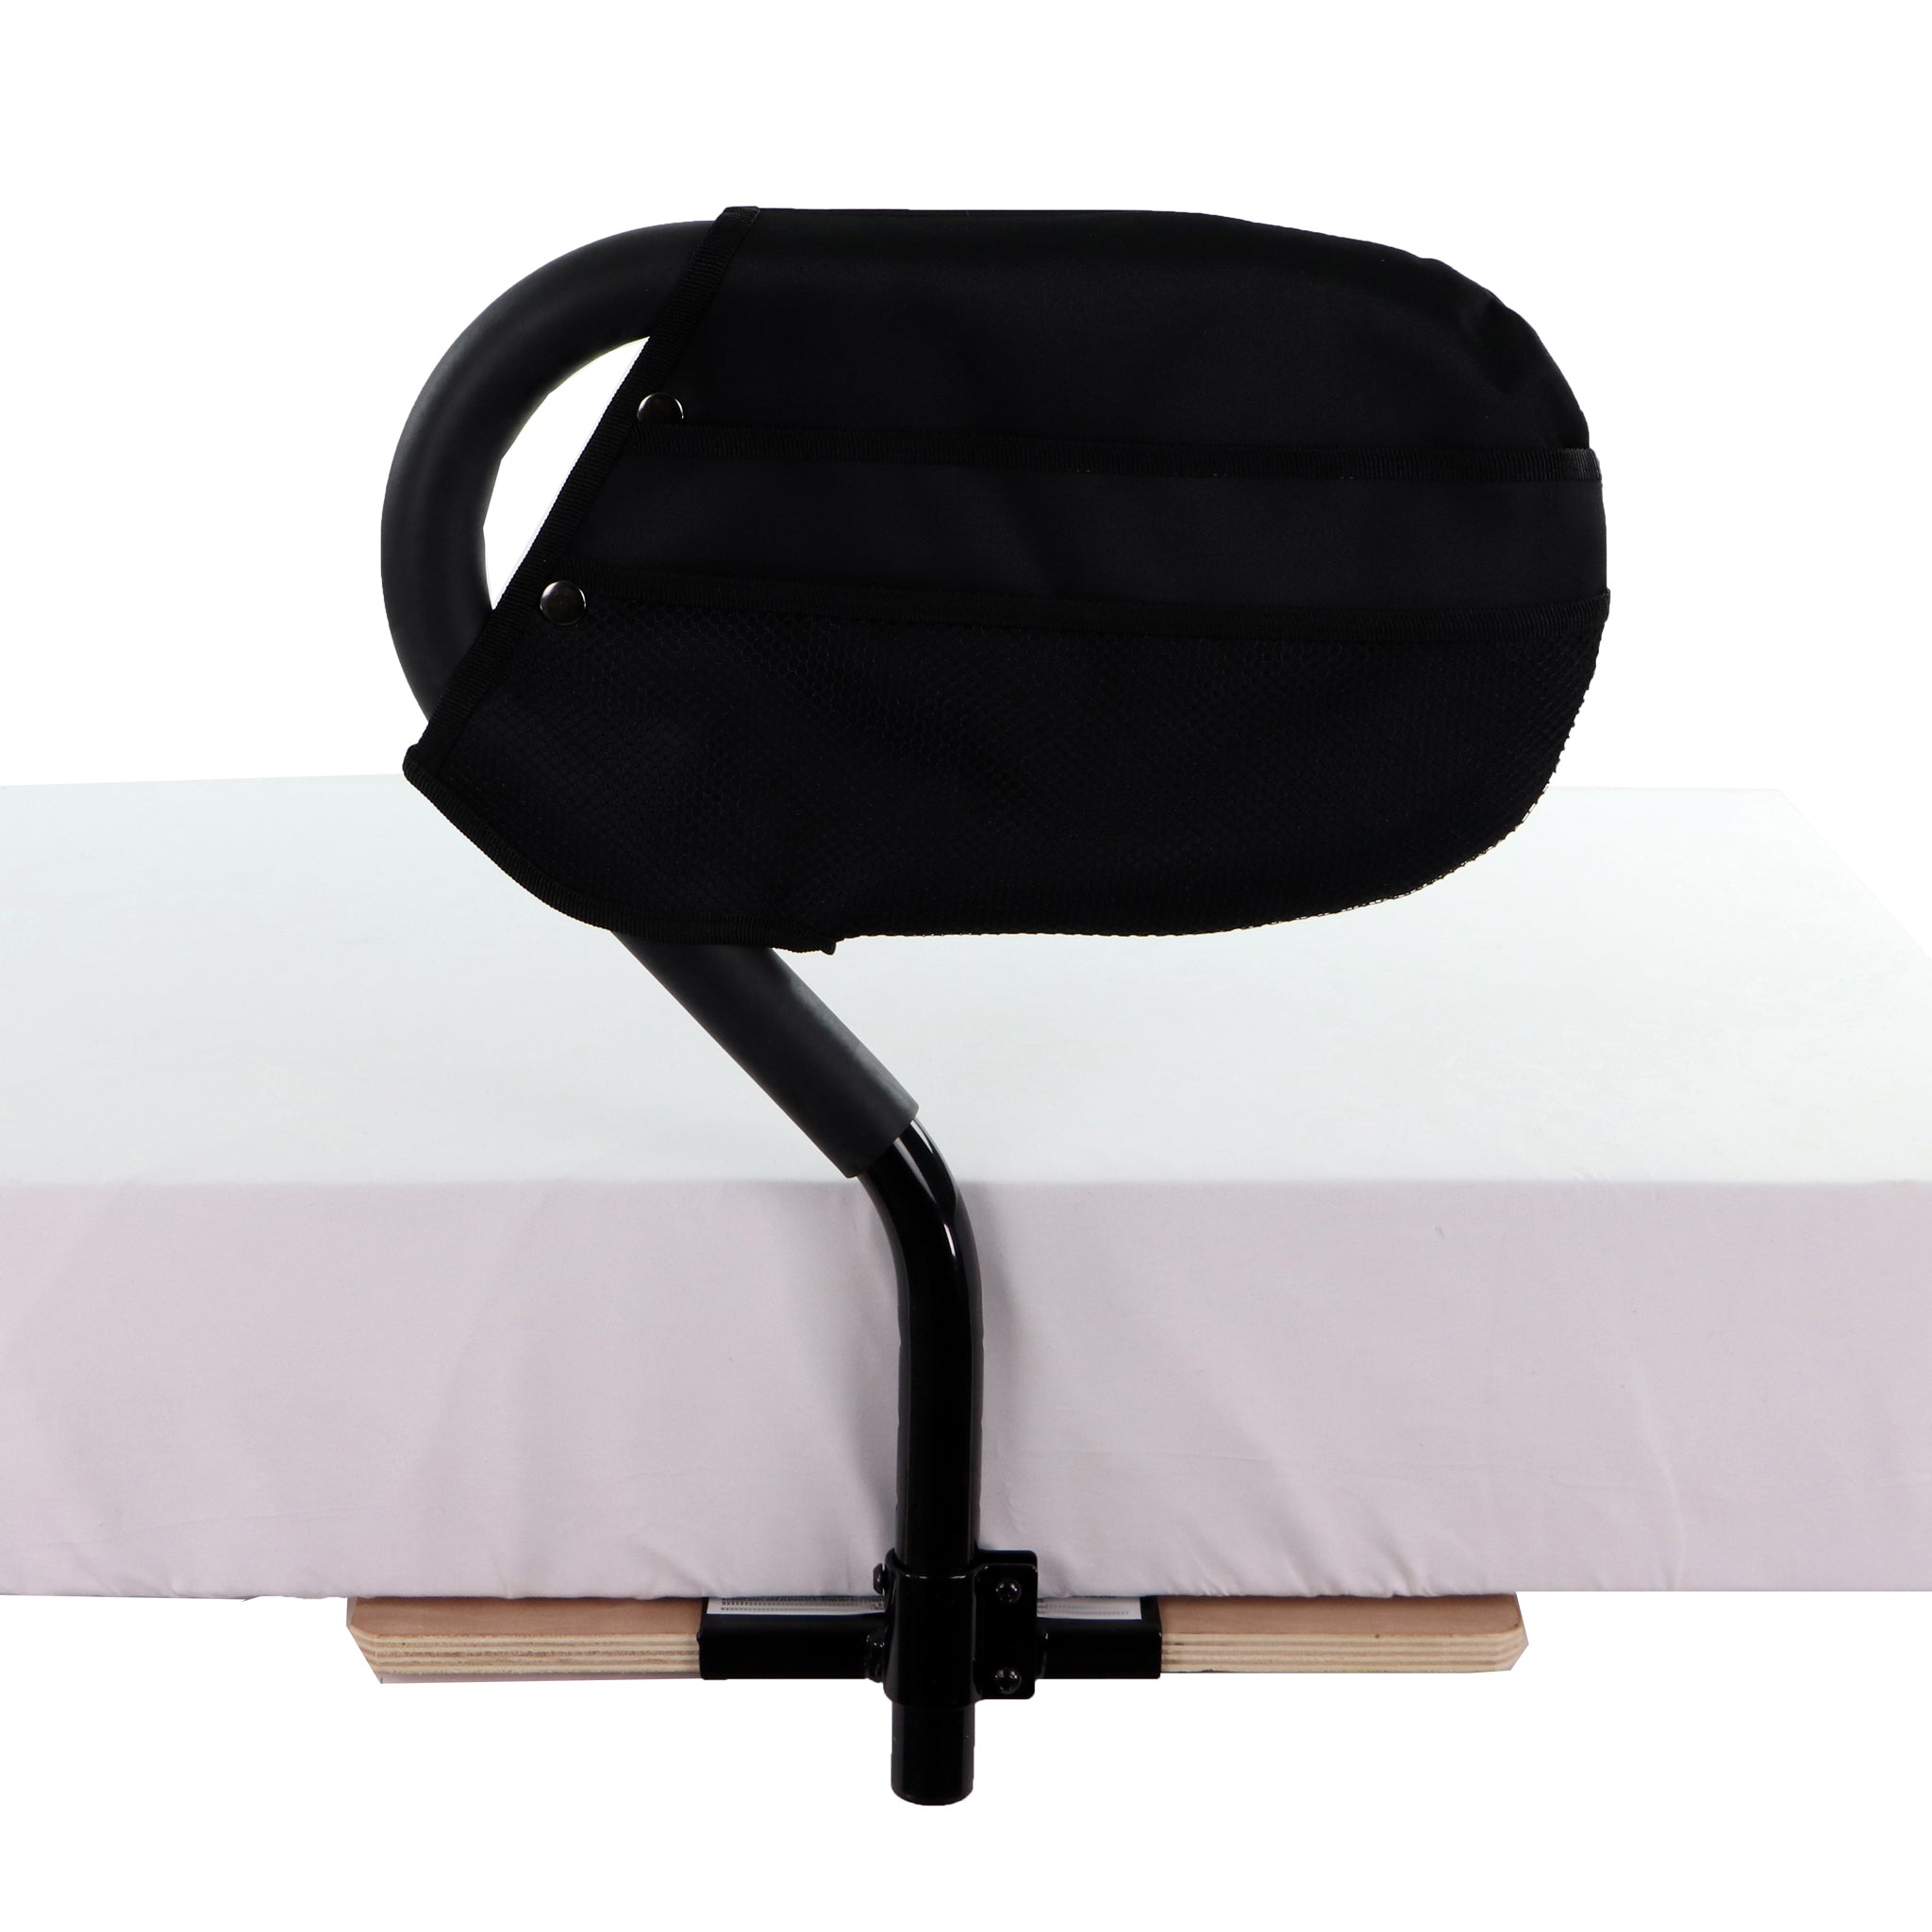 Test} Le bumper de lit, l'alternative aux barrières de lit - By Paulette